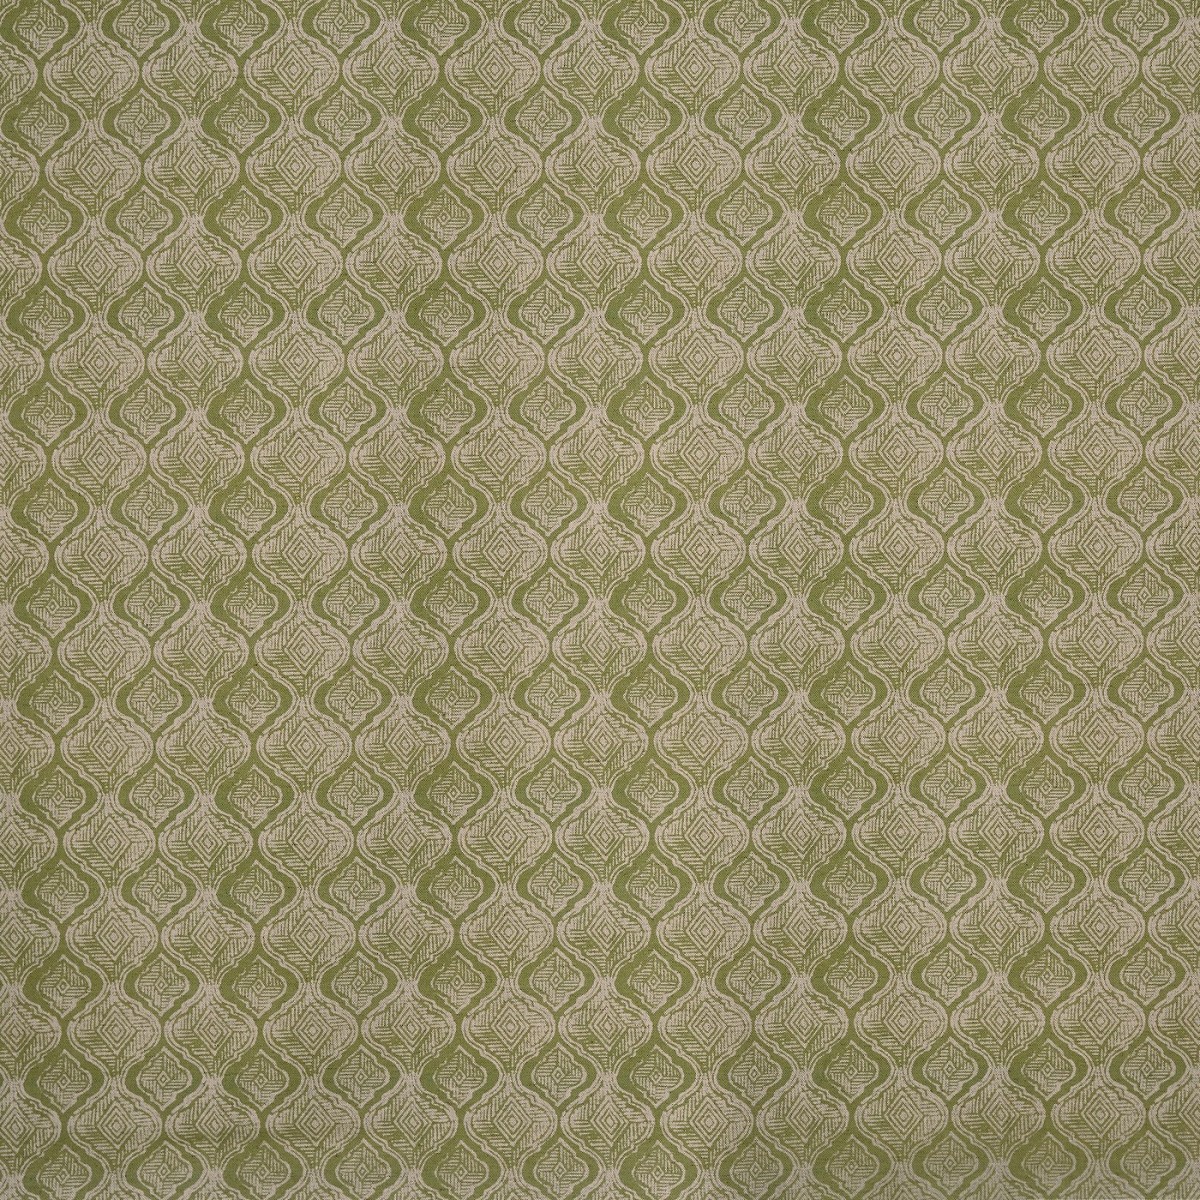 Ragley Fennel Fabric by Prestigious Textiles